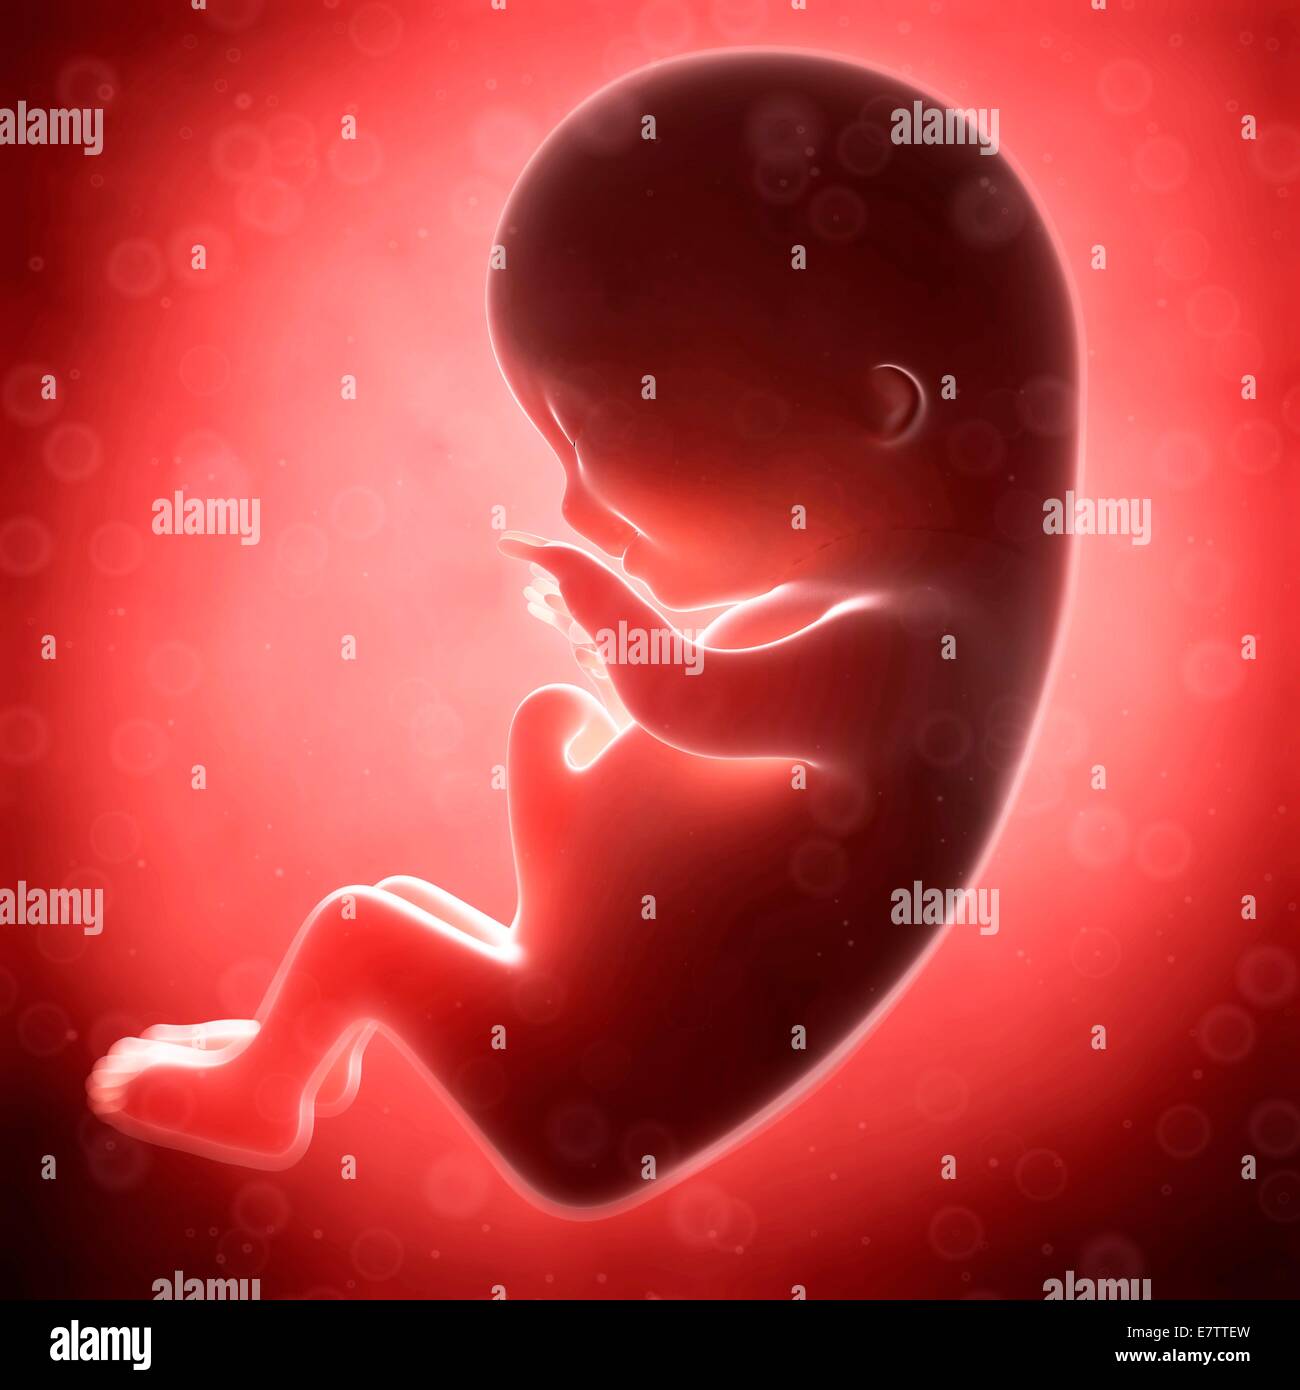 Desarrollo Fetal Humano Mes 3 Equipo De Ilustraciones Fotografía De Stock Alamy 0560